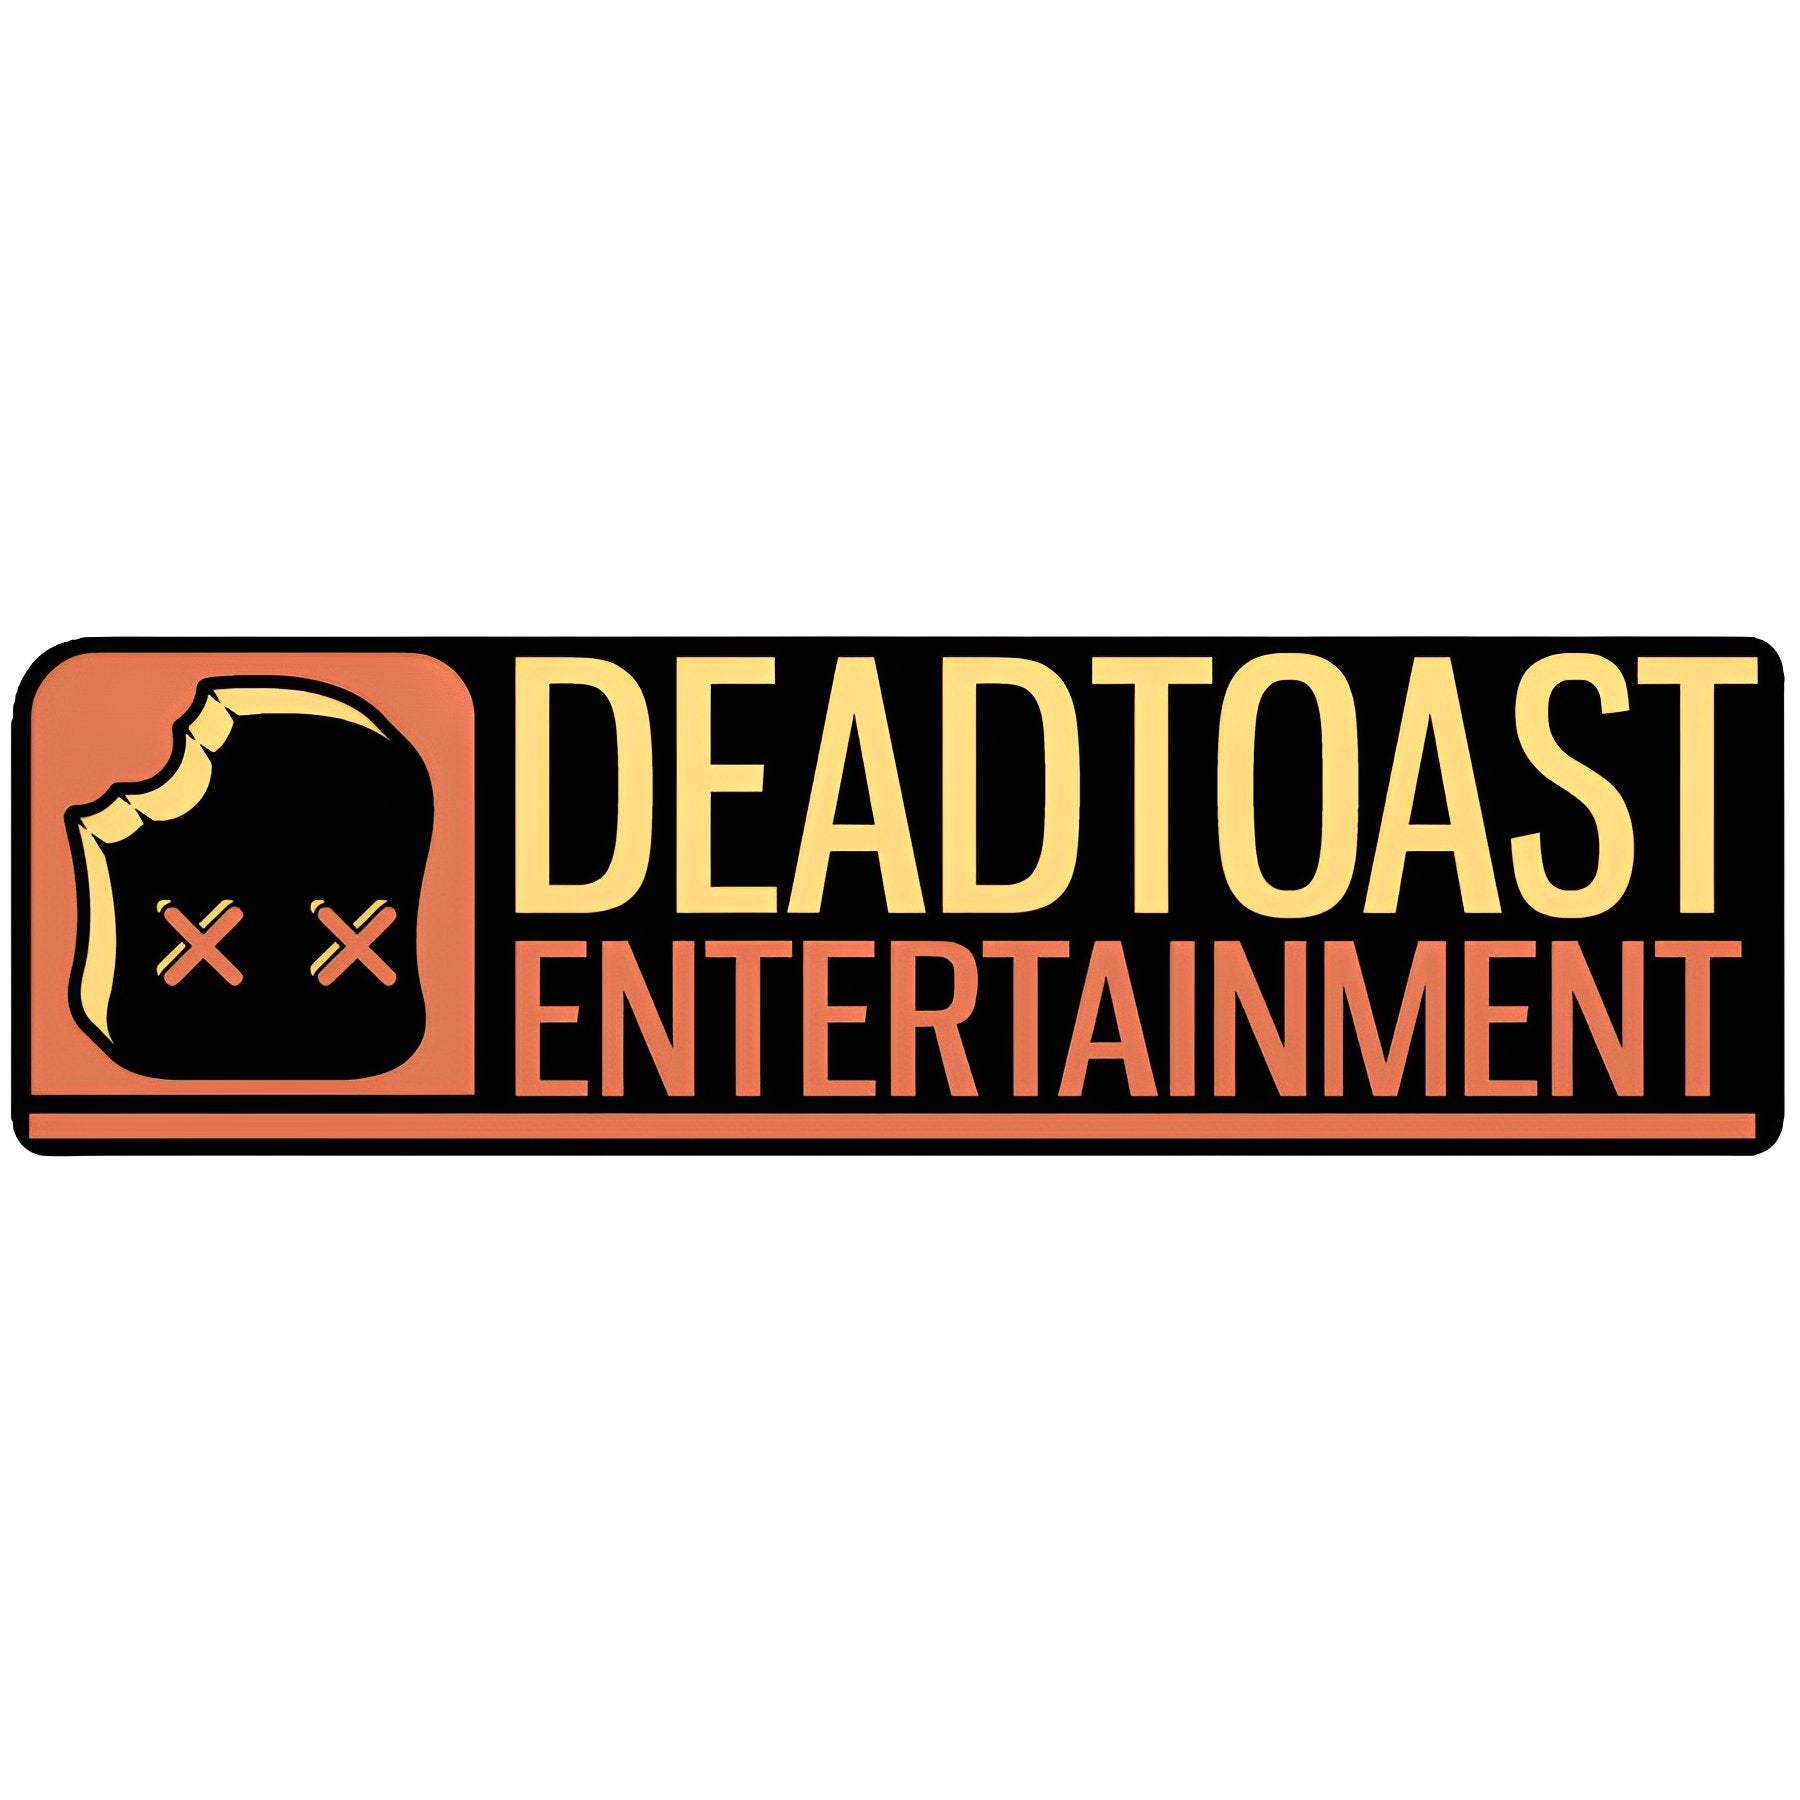 DeadToast Entertainment